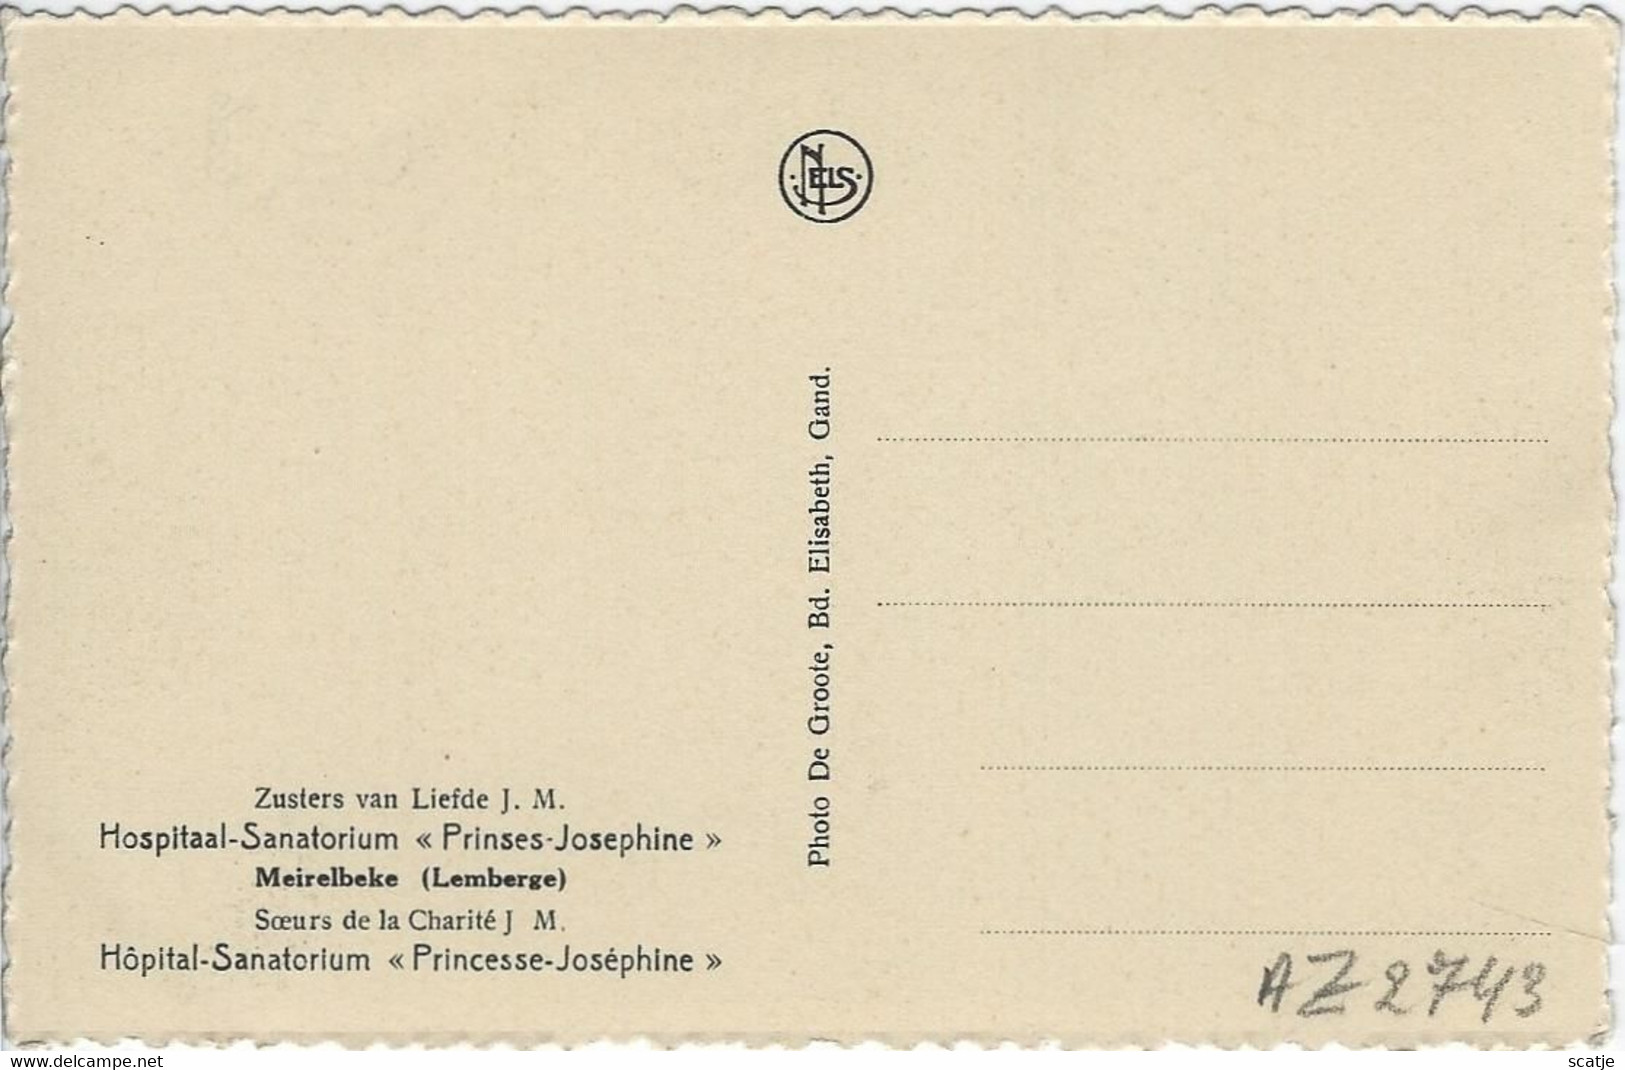 Meirelbeke   -   Zusters Van Liefde J.M.   -   Hôpital-Sanatorium   Princesse-Joséphine - Merelbeke